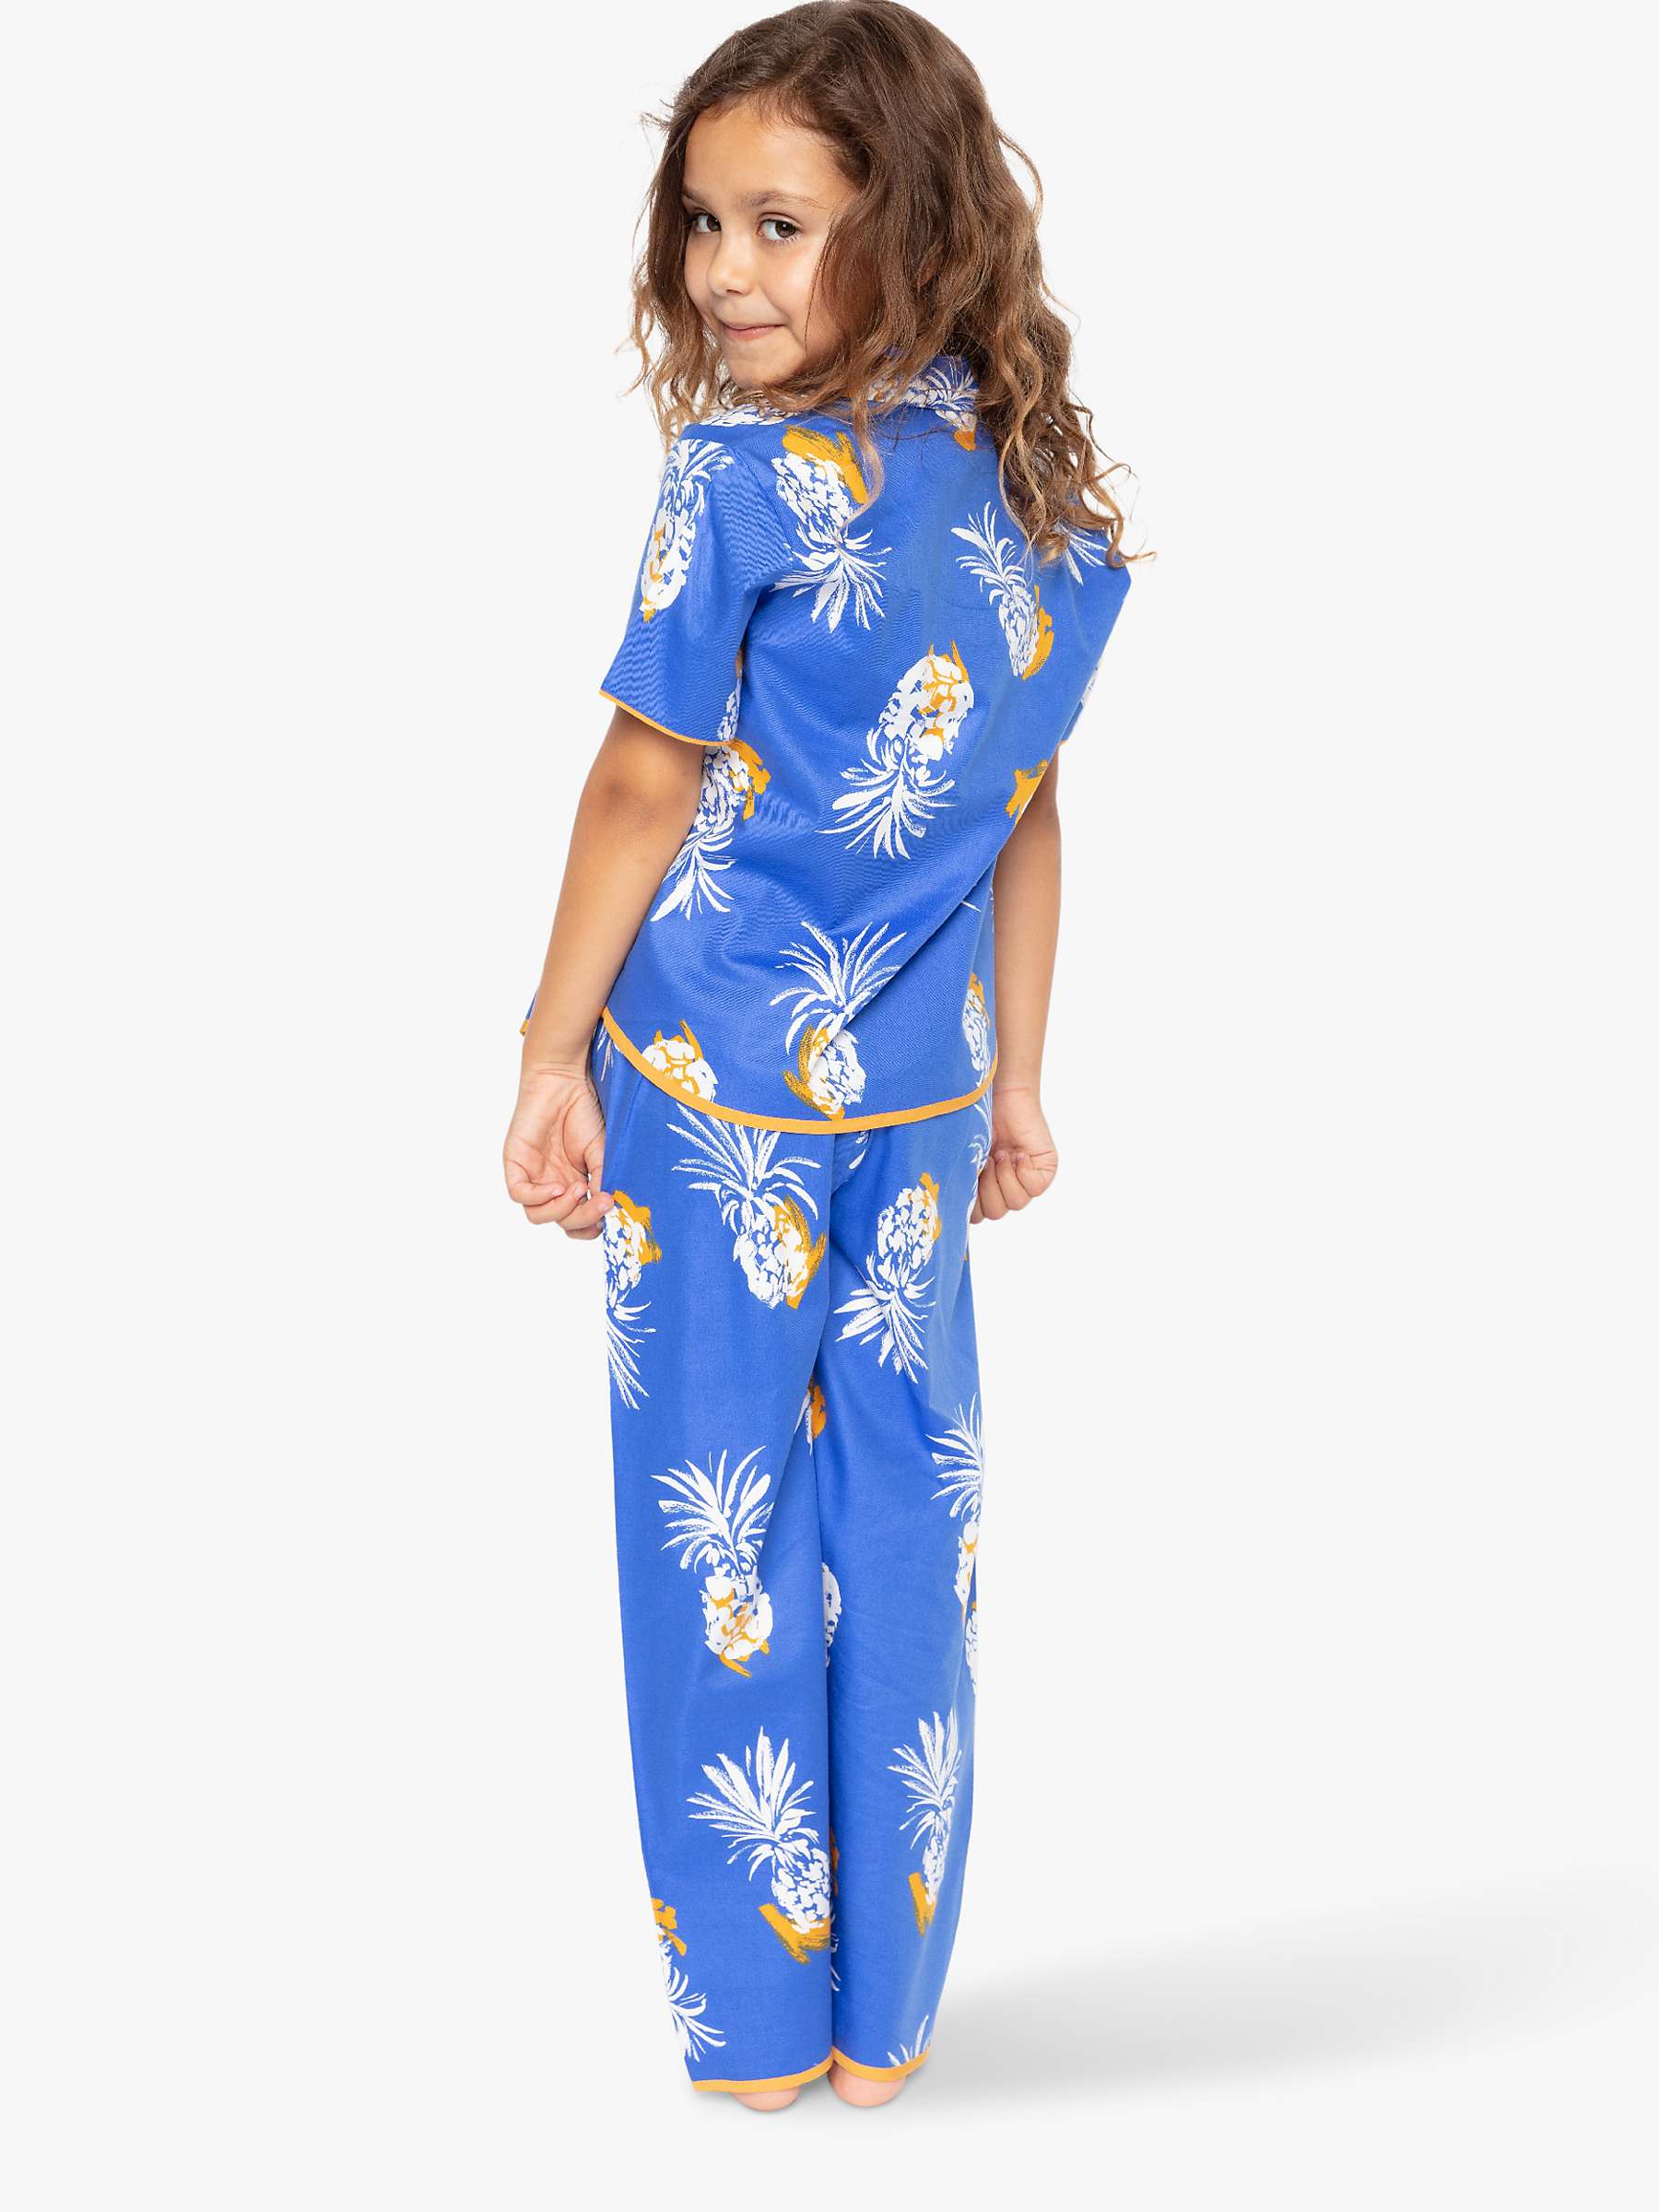 Buy Cyberjammies Kids' Sierra Pineapple Print Pyjama Set, Blue Online at johnlewis.com